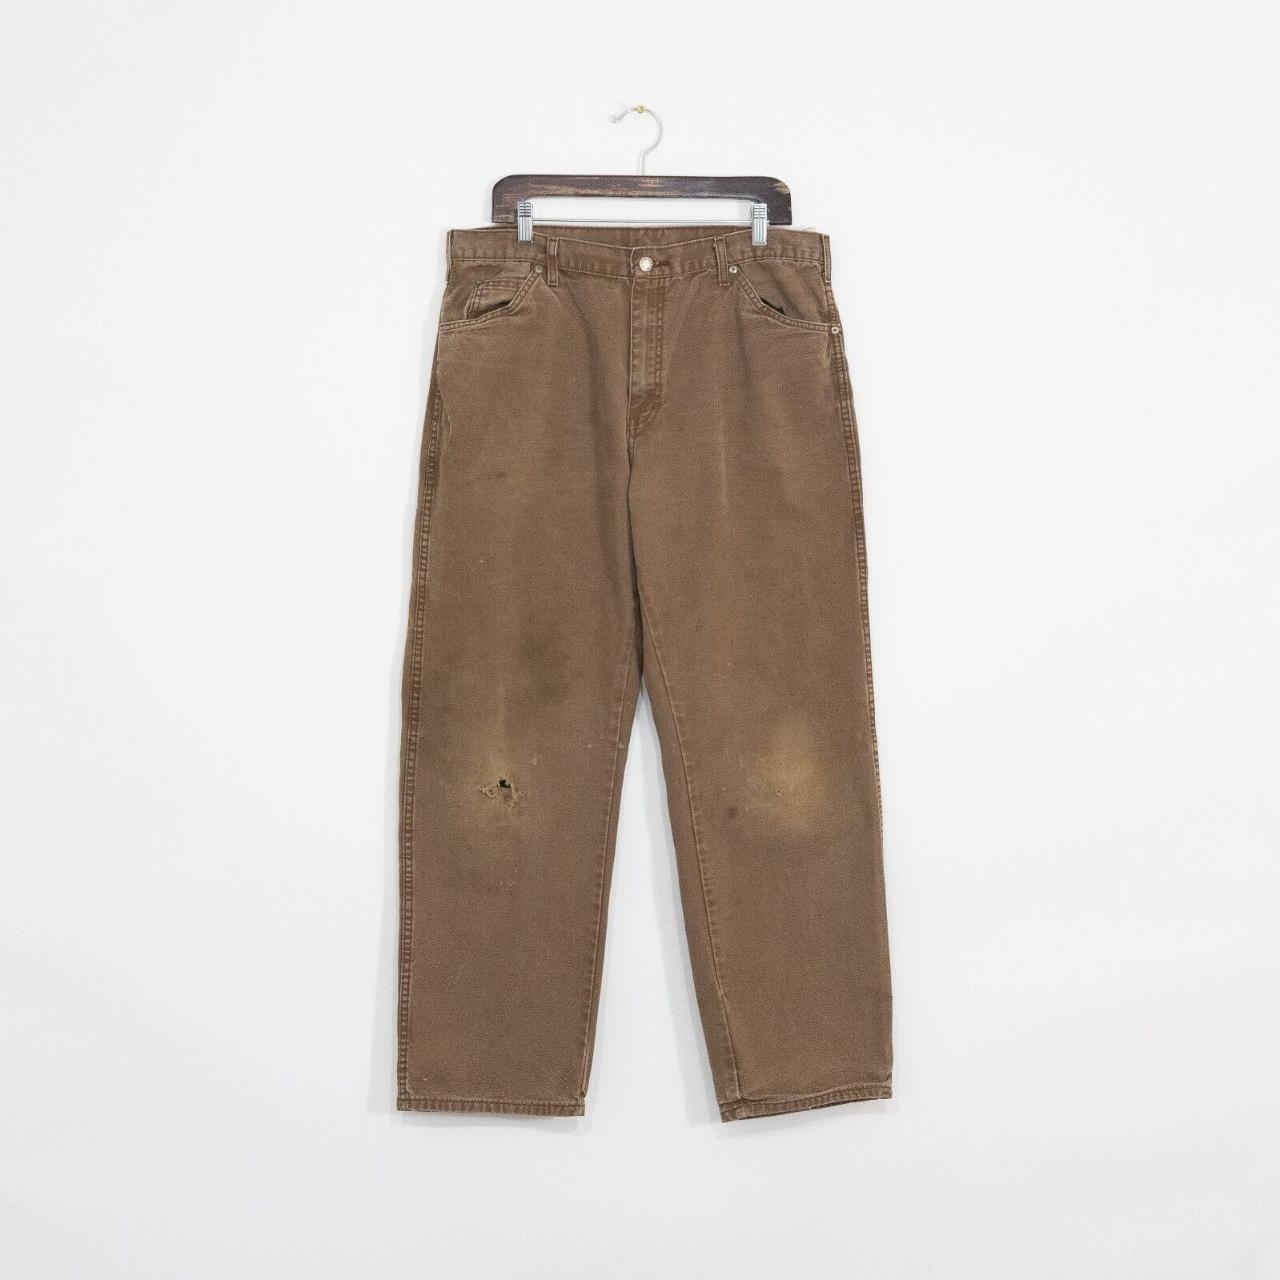 Dickies Men's Brown Jeans | Depop